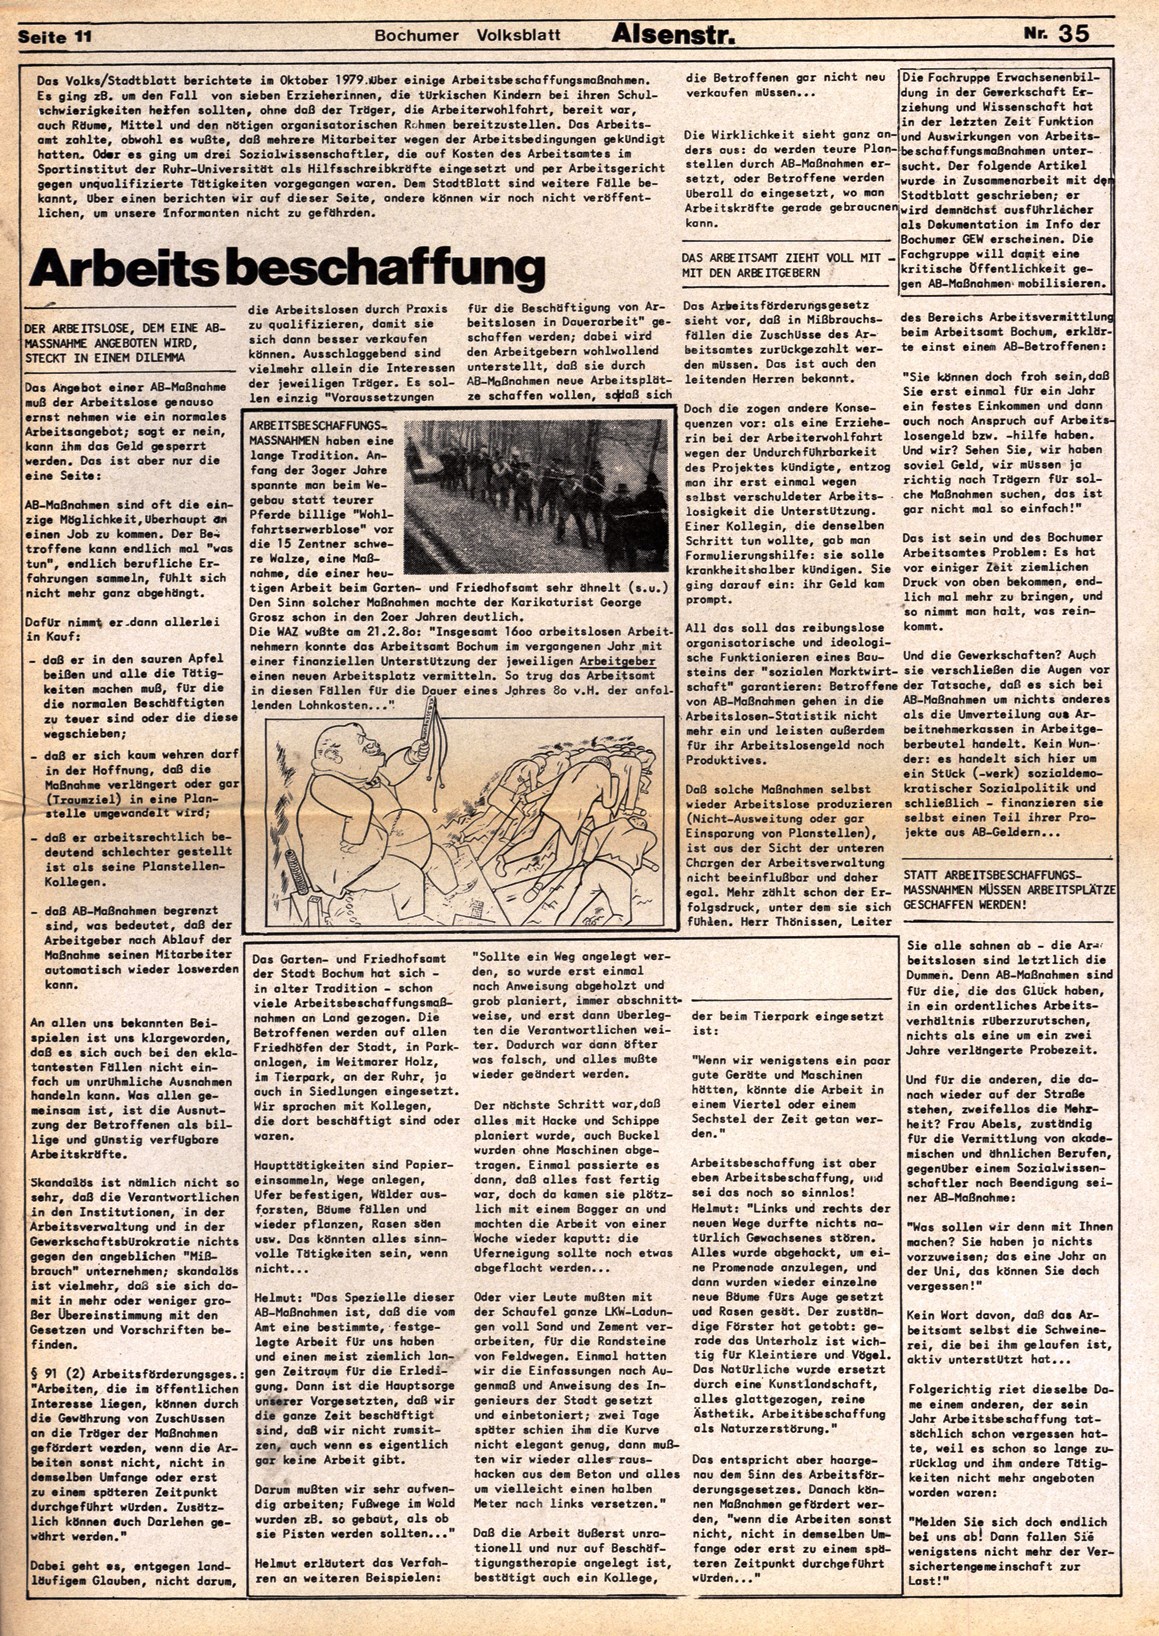 Bochum_Volksblatt_19800300_35_11